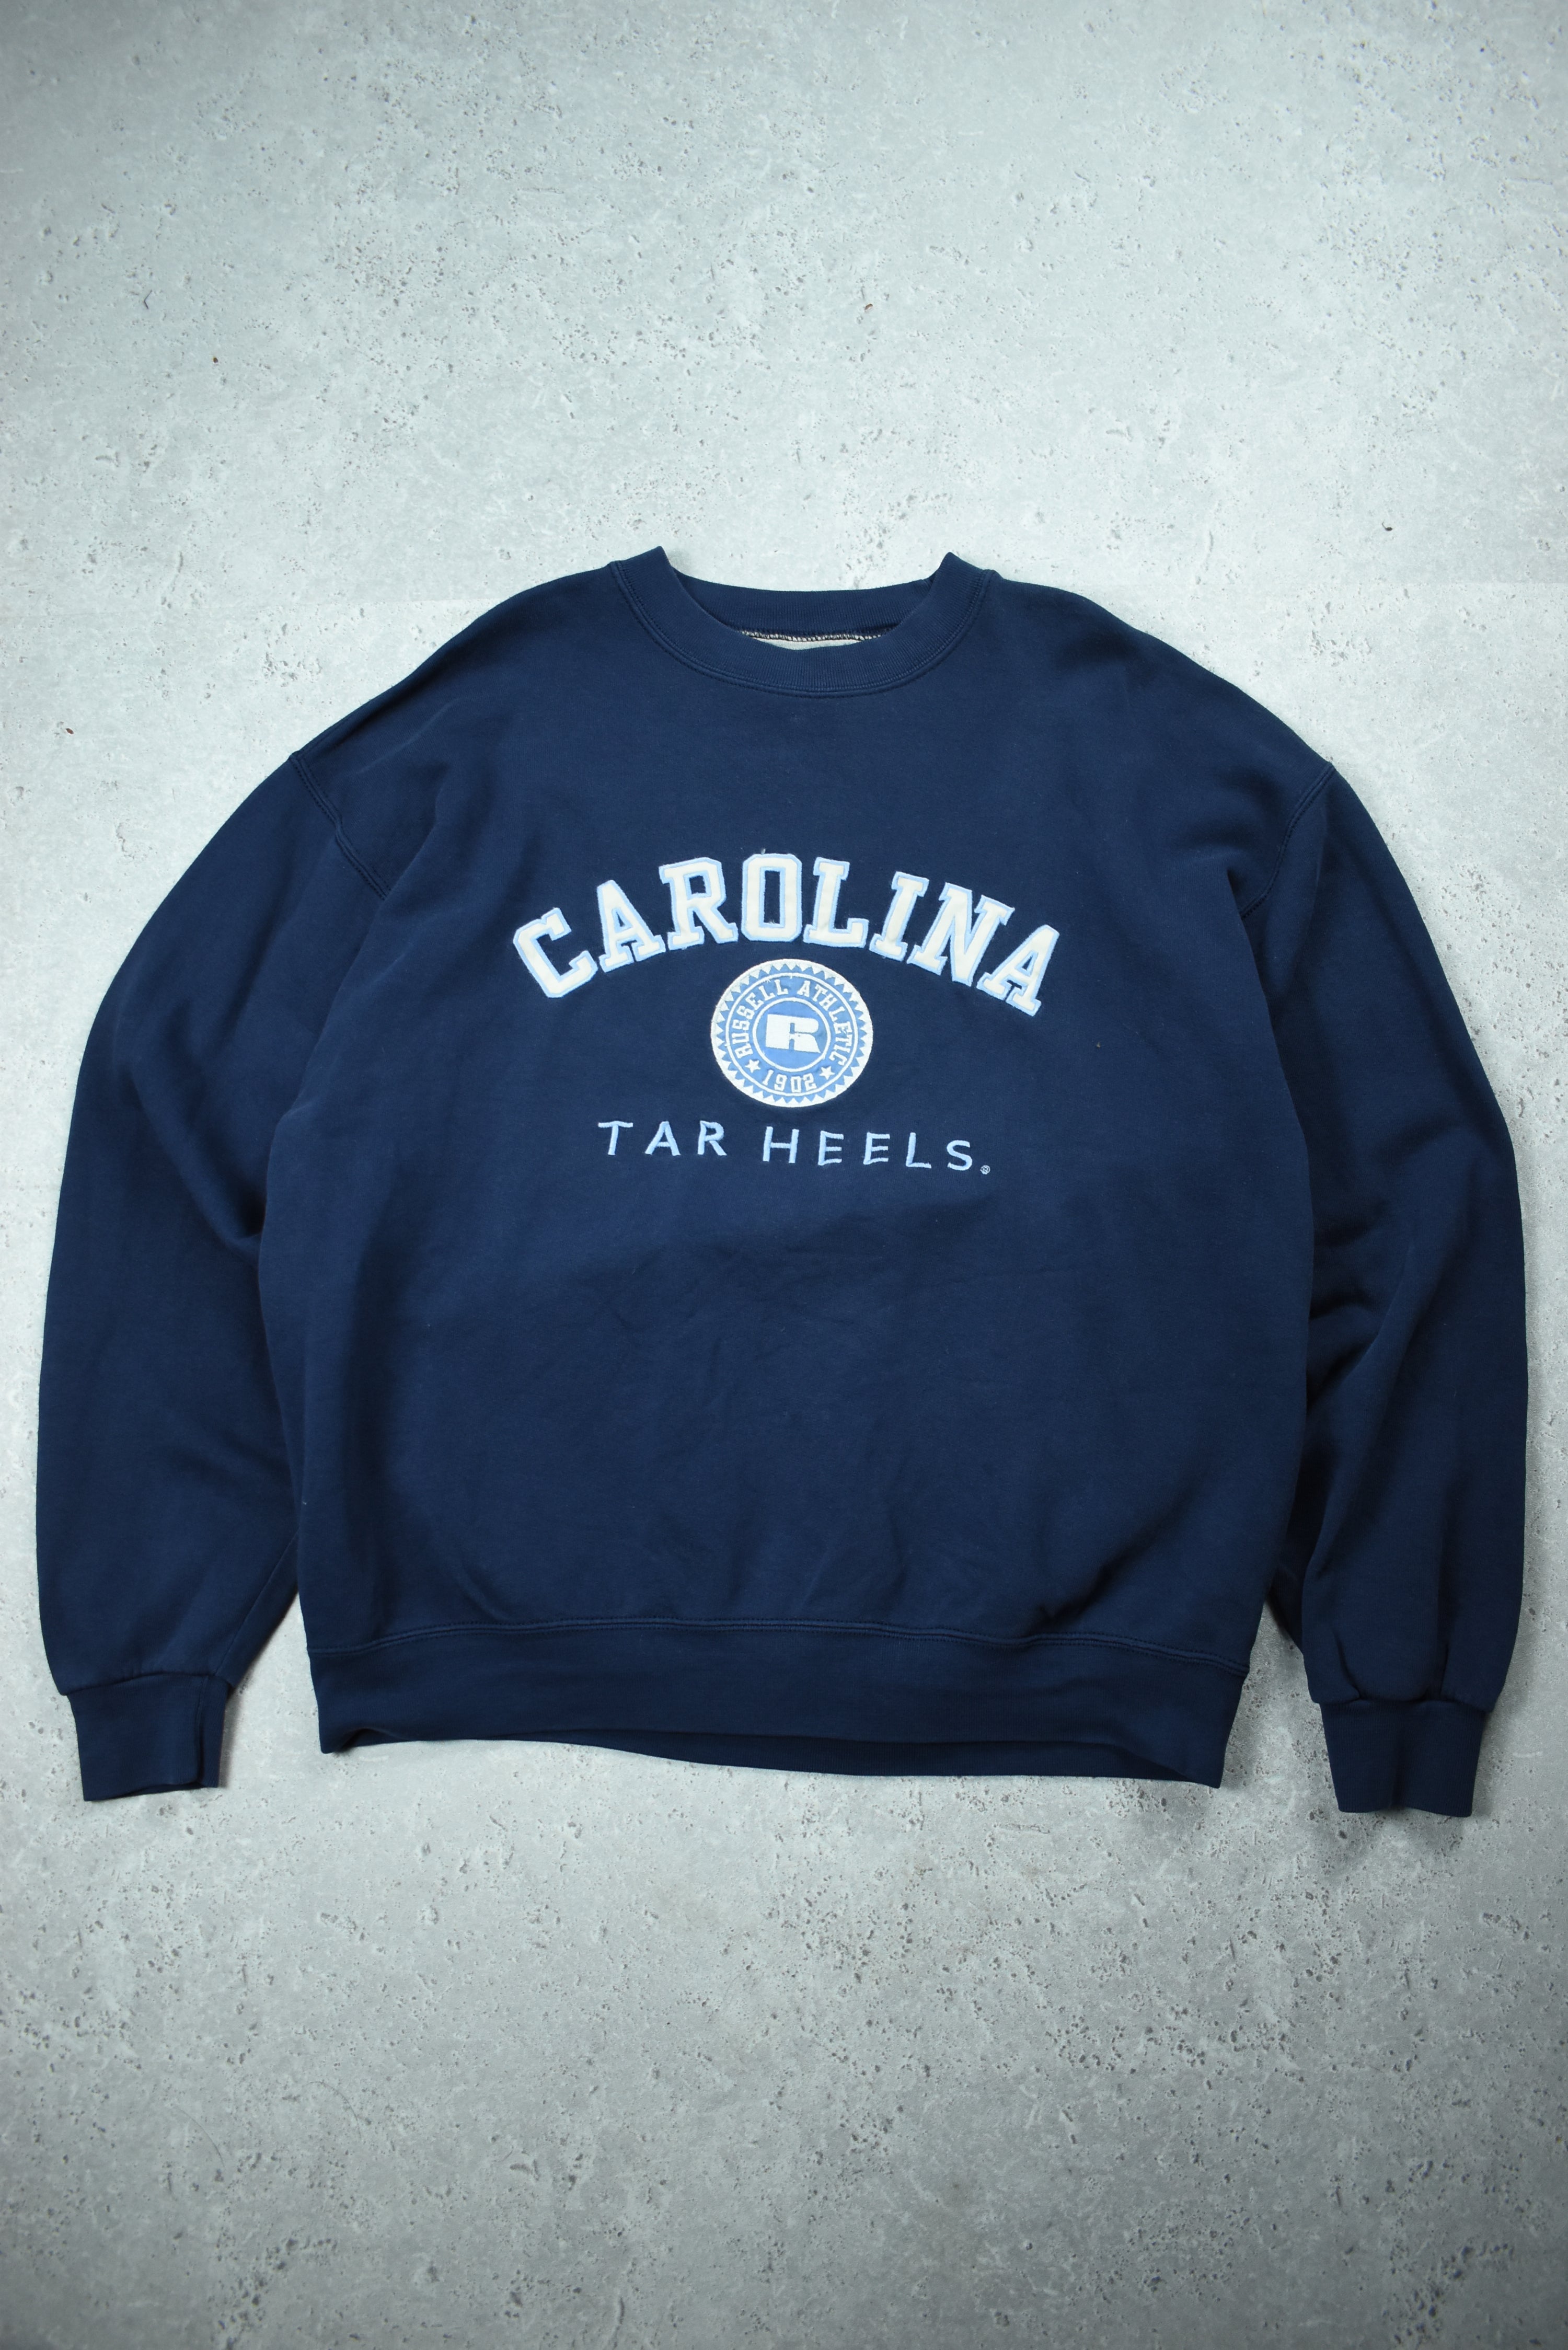 Vintage Russell Athletic Carolina Tar Heels Embroidery Sweatshirt Medium